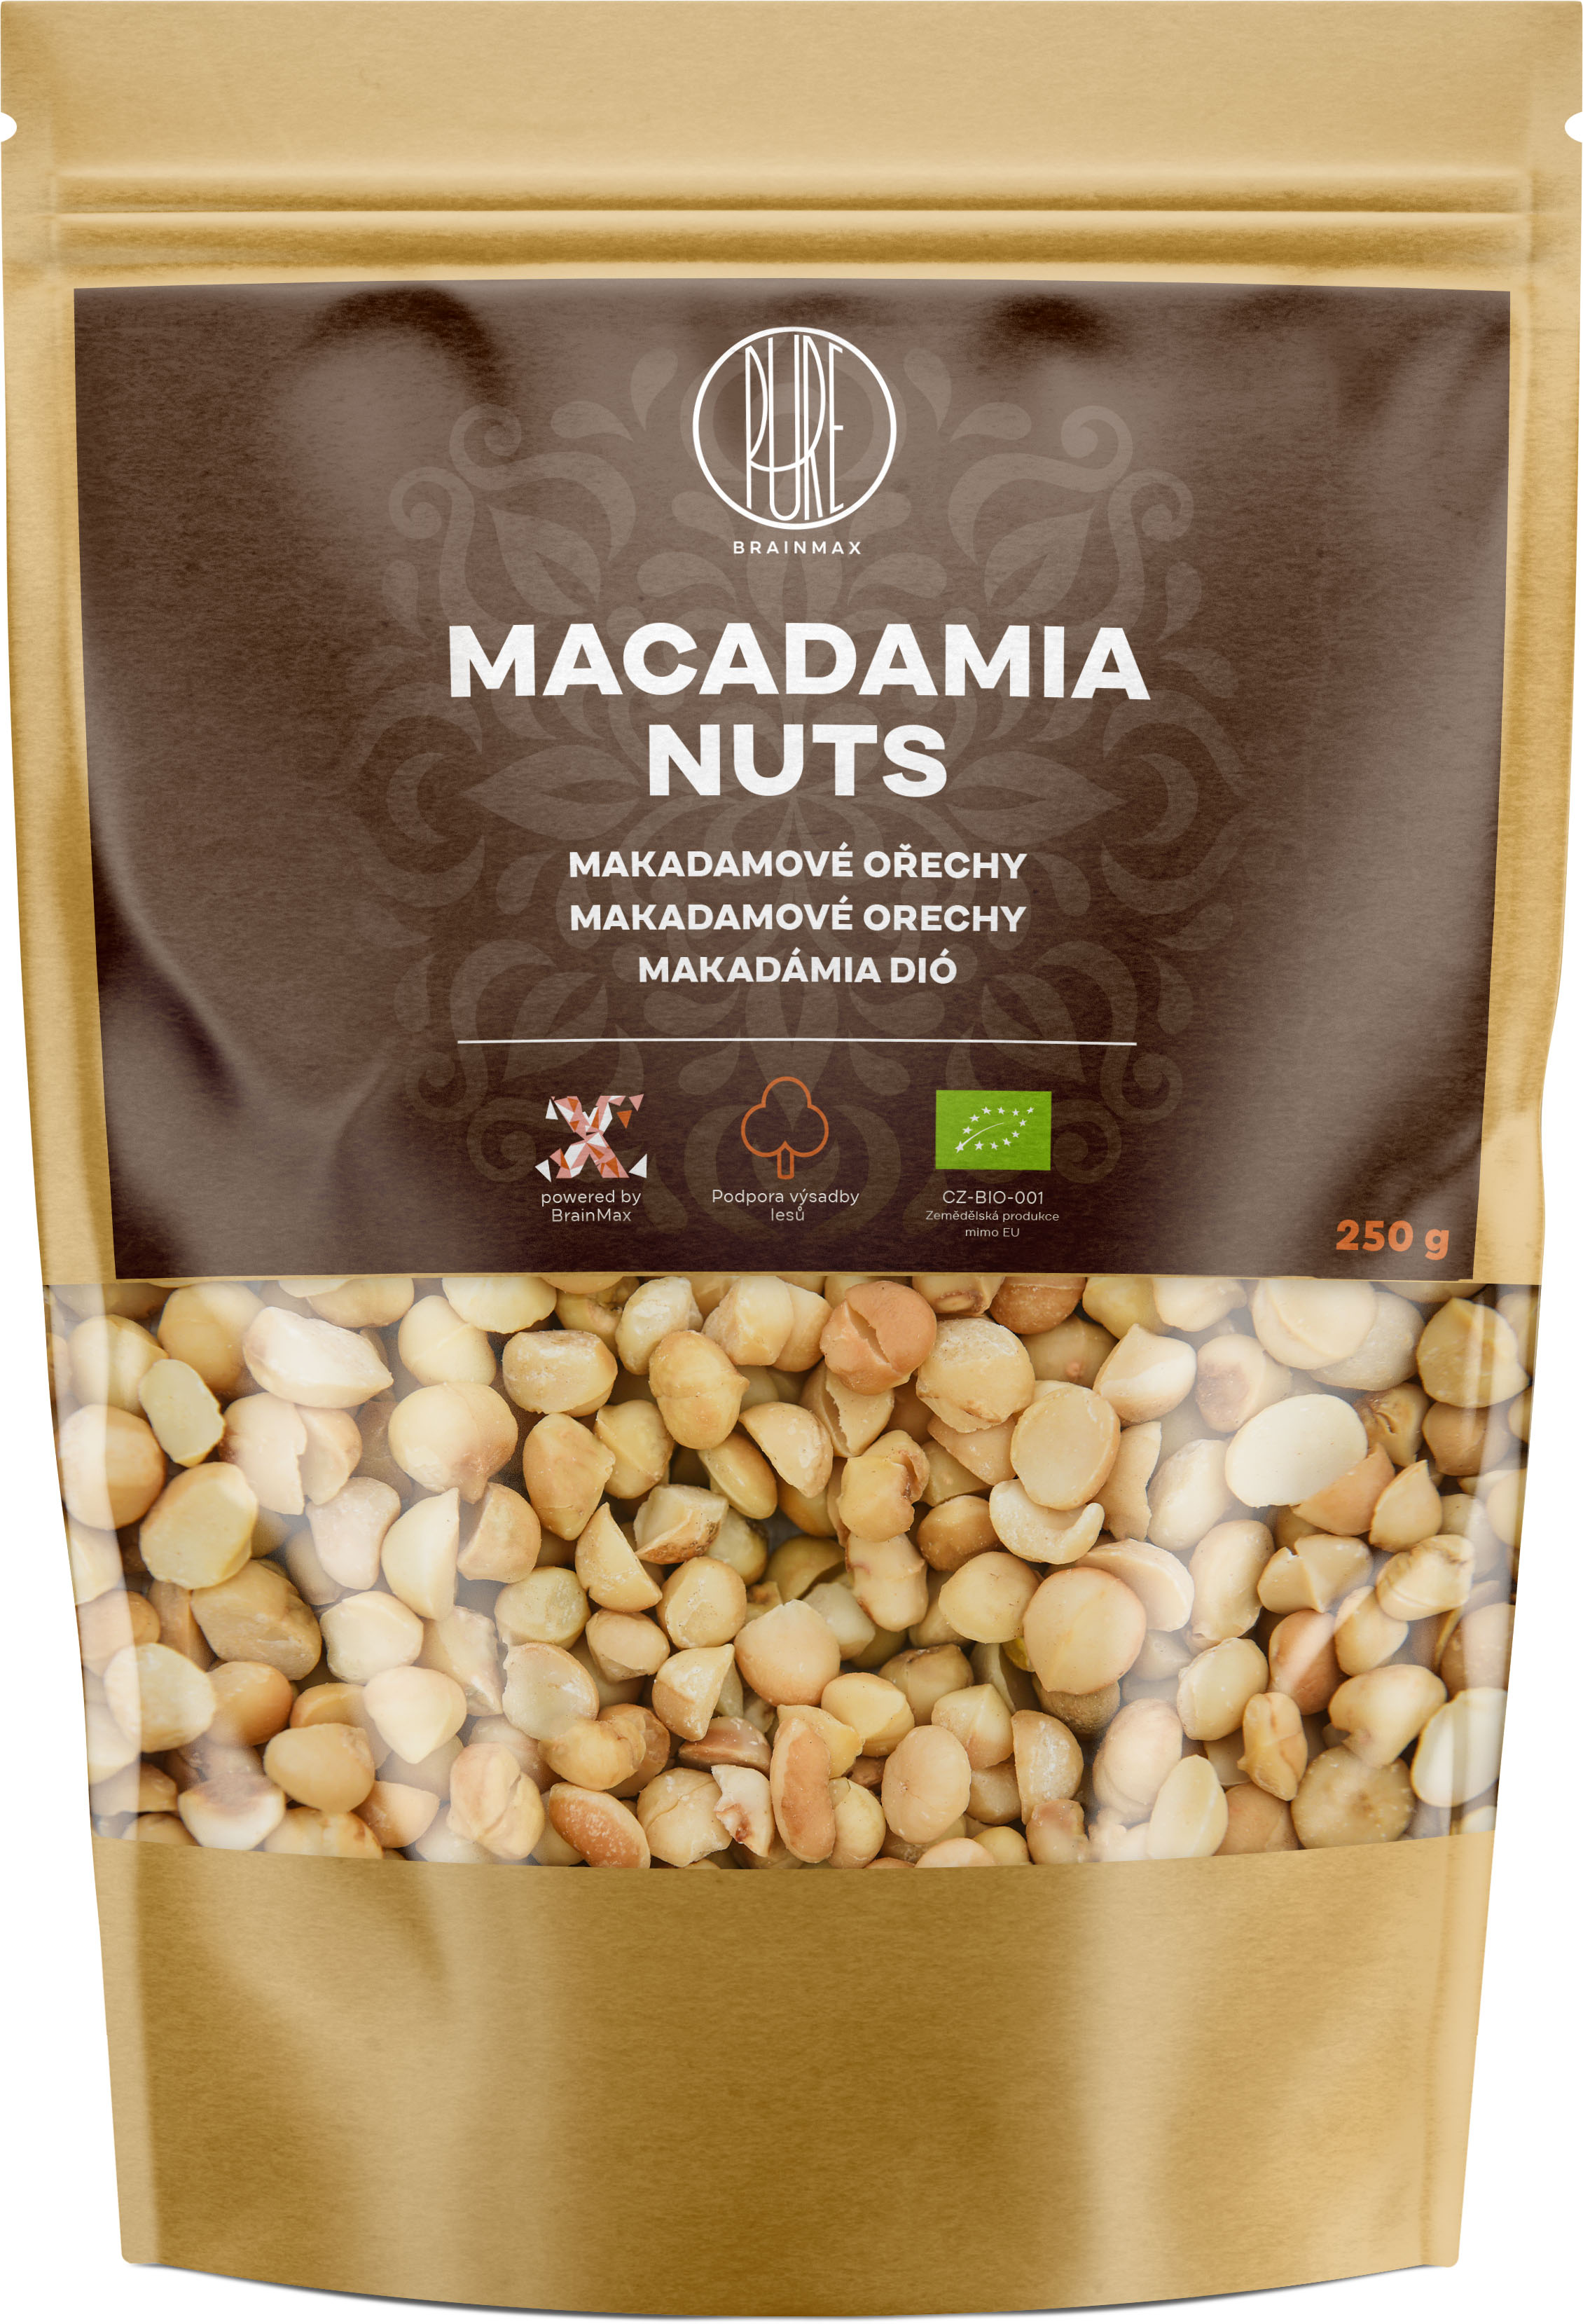 BrainMax Pure Makadamové ořechy BIO, 250 g *cz-bio-001 certifikát,